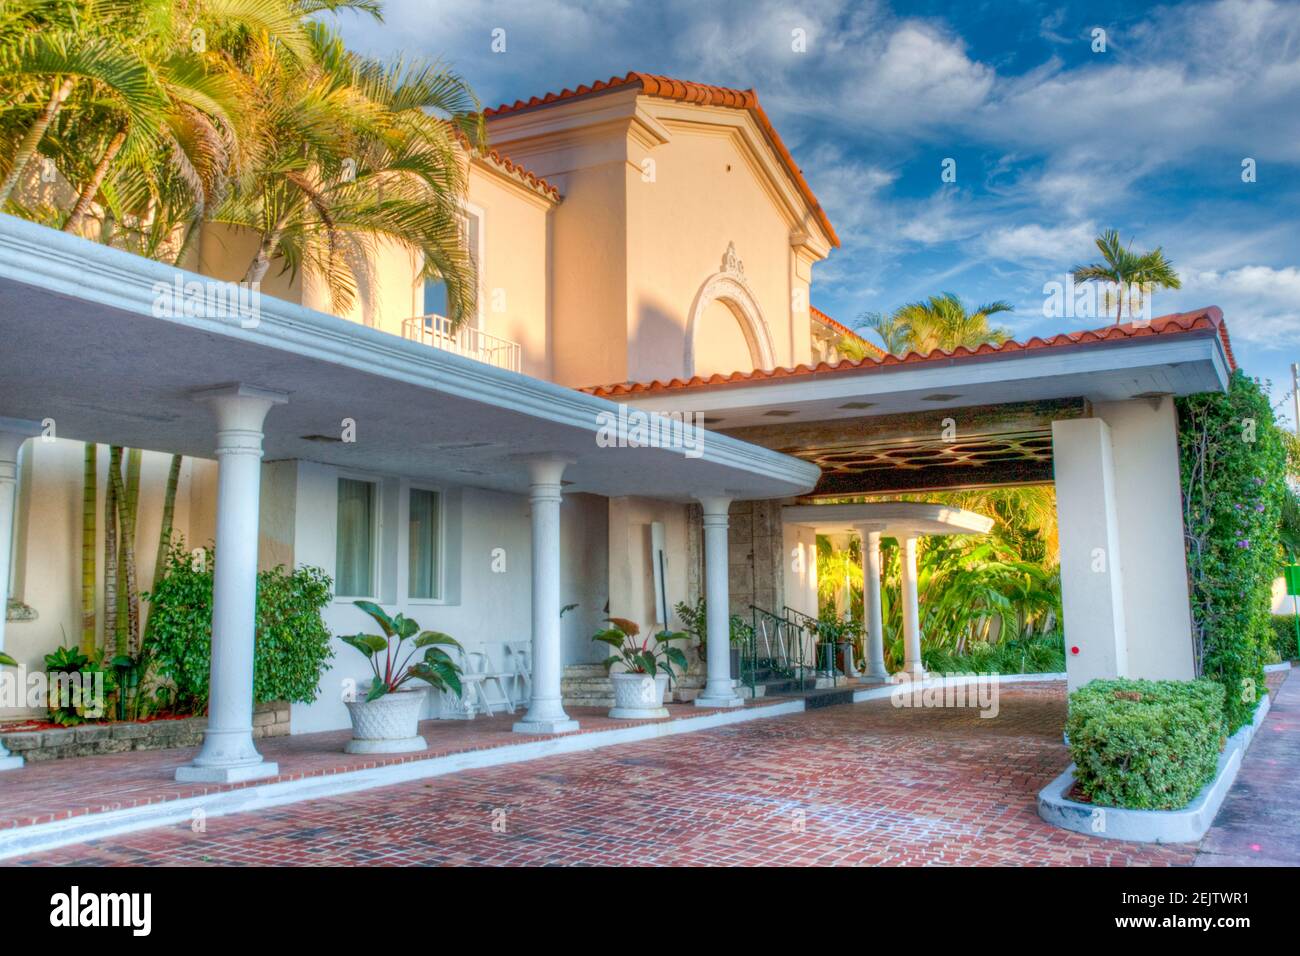 L'entrée principale de l'ancien Surf Club à Surfside, Miami Beach, Floride, fait maintenant partie de l'hôtel four Seasons. Banque D'Images